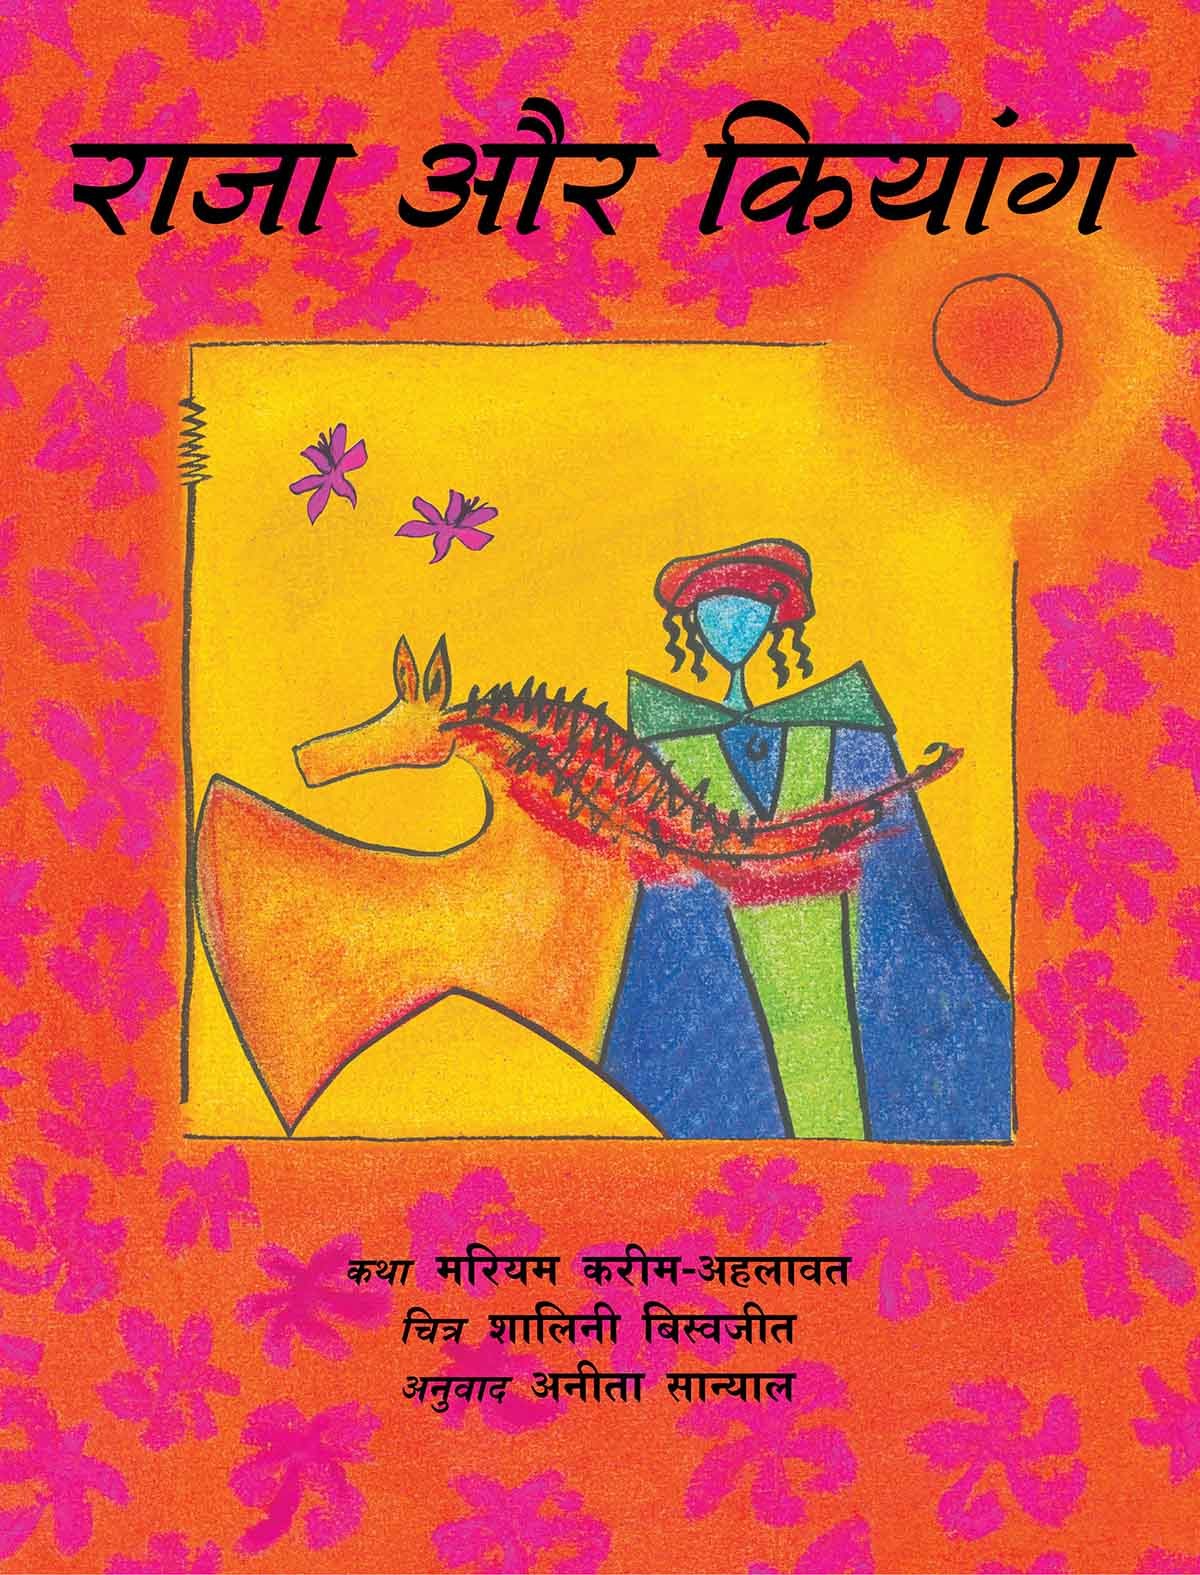 The King And The Kiang/Raja Aur Kiang (Hindi)